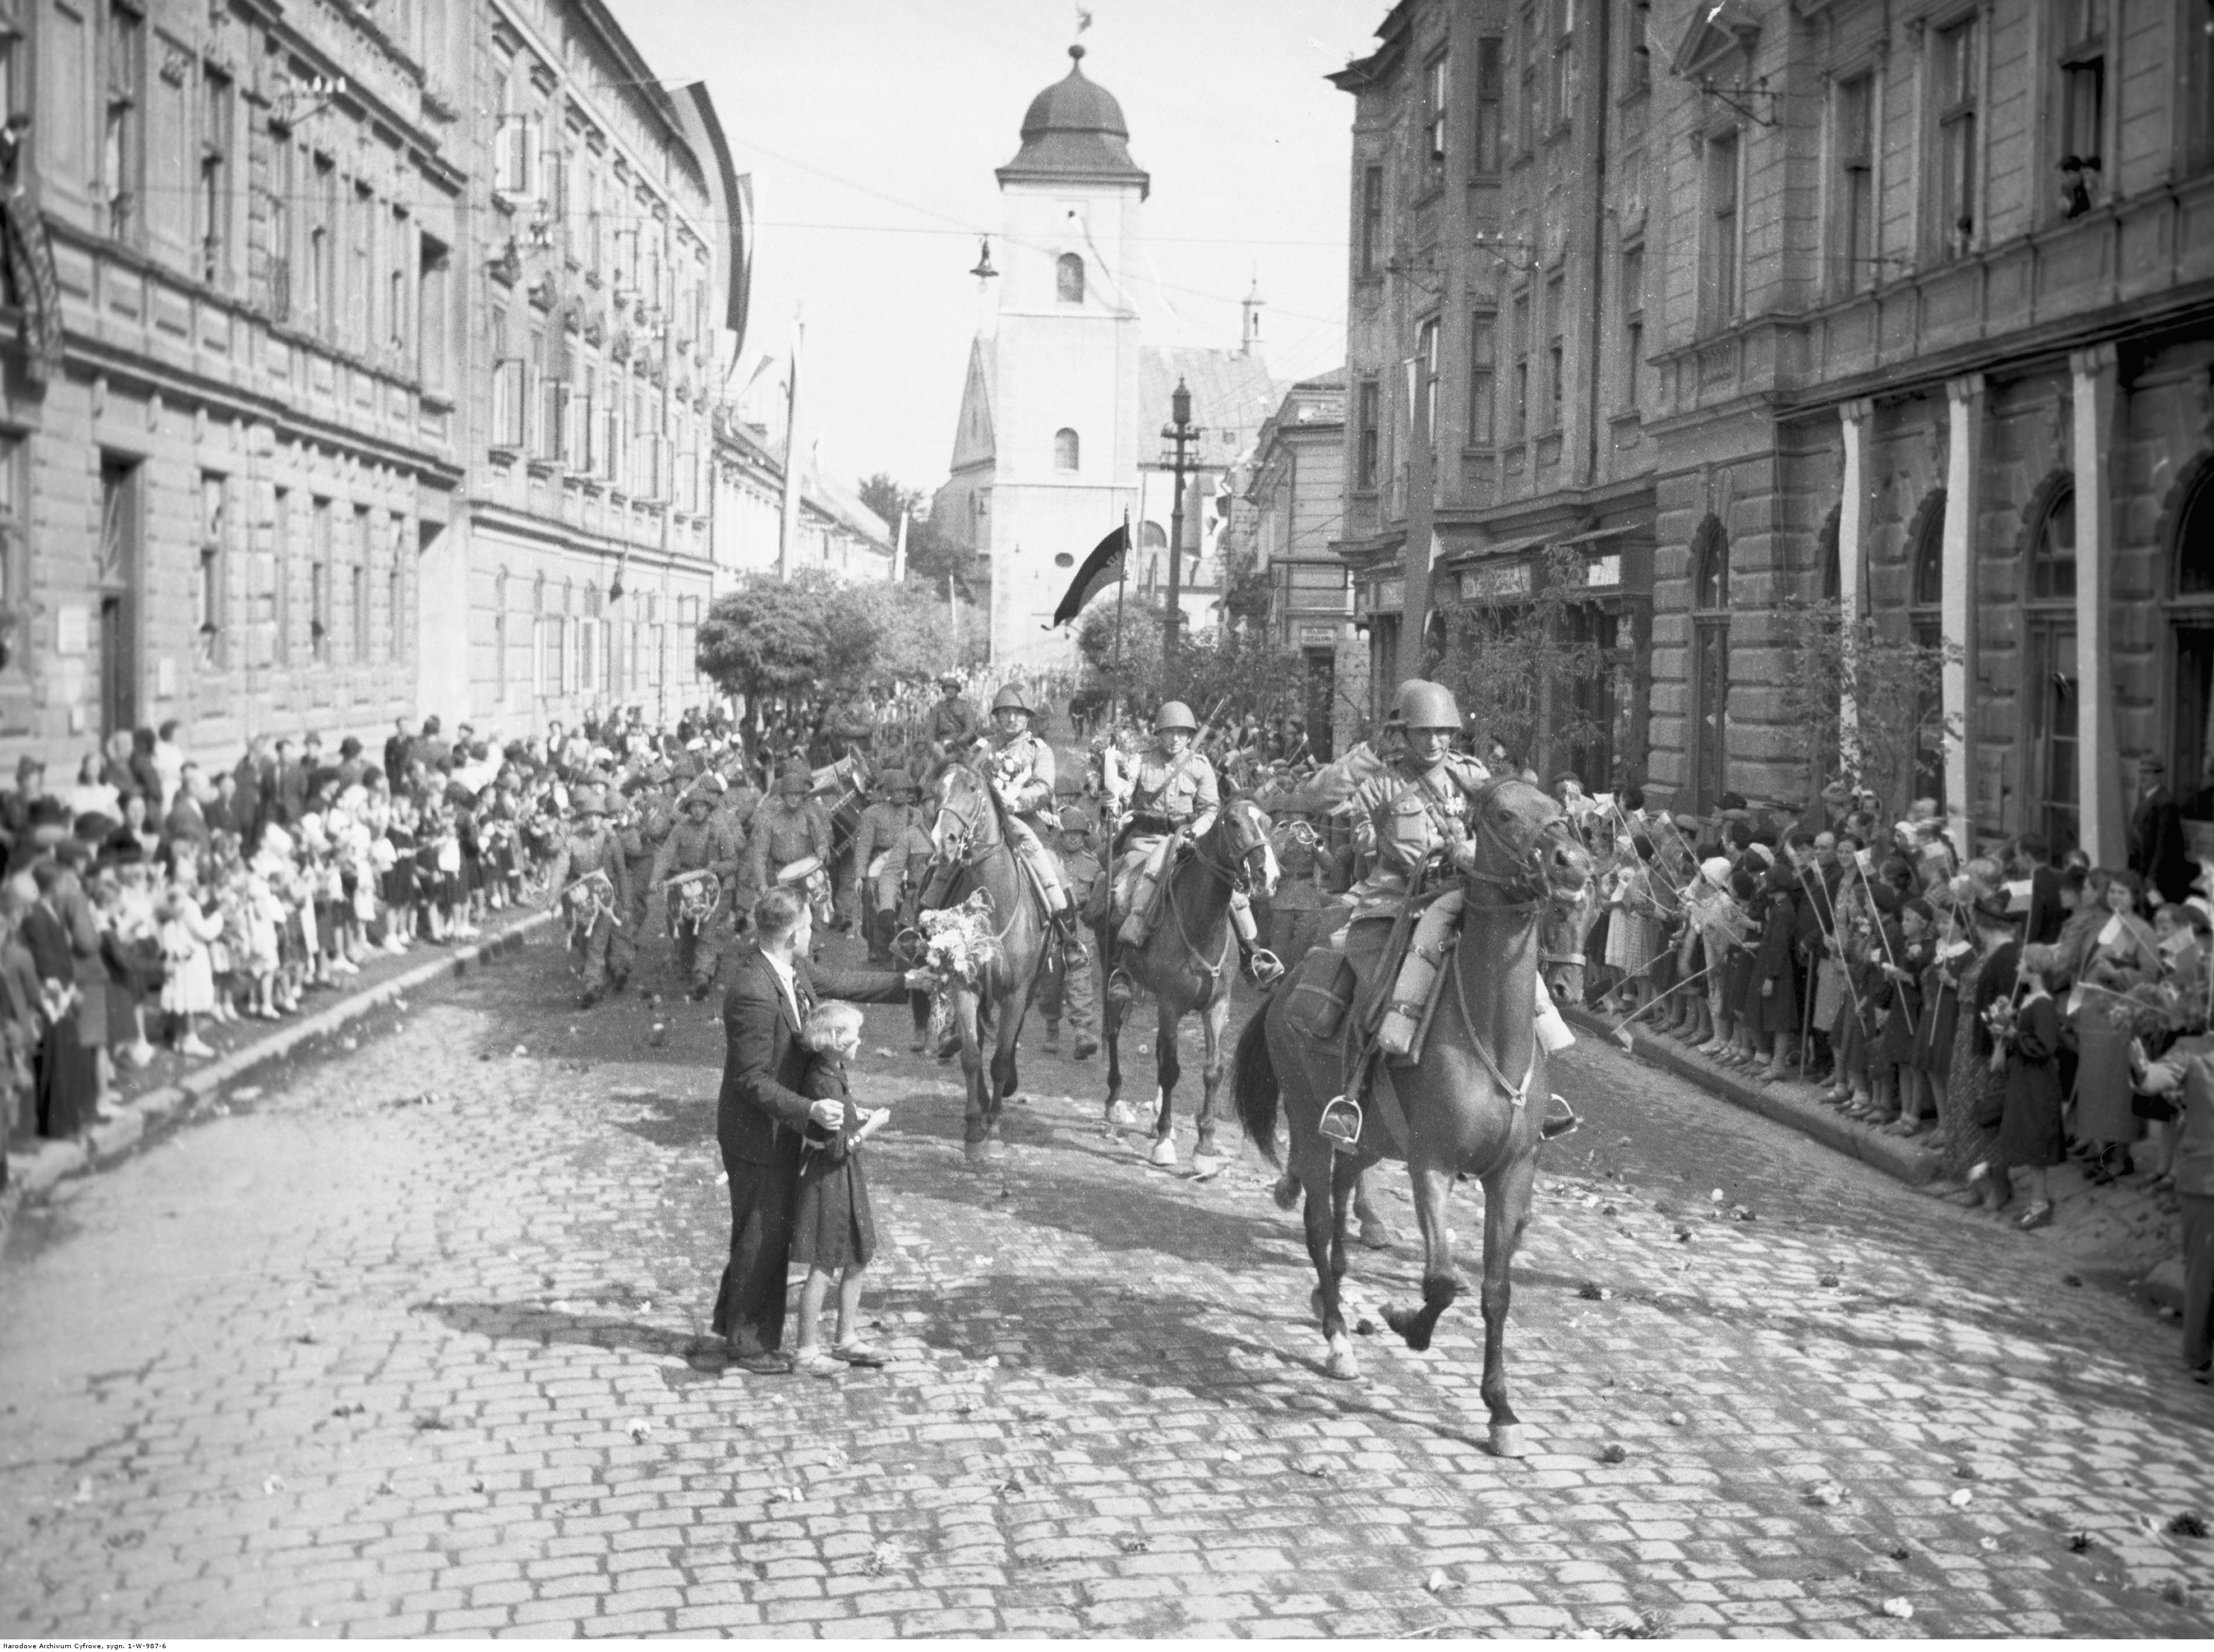 Powrót wojska po manewrach do Rzeszowa. Powitanie żołnierzy na jednej z ulic, rok 1938-09